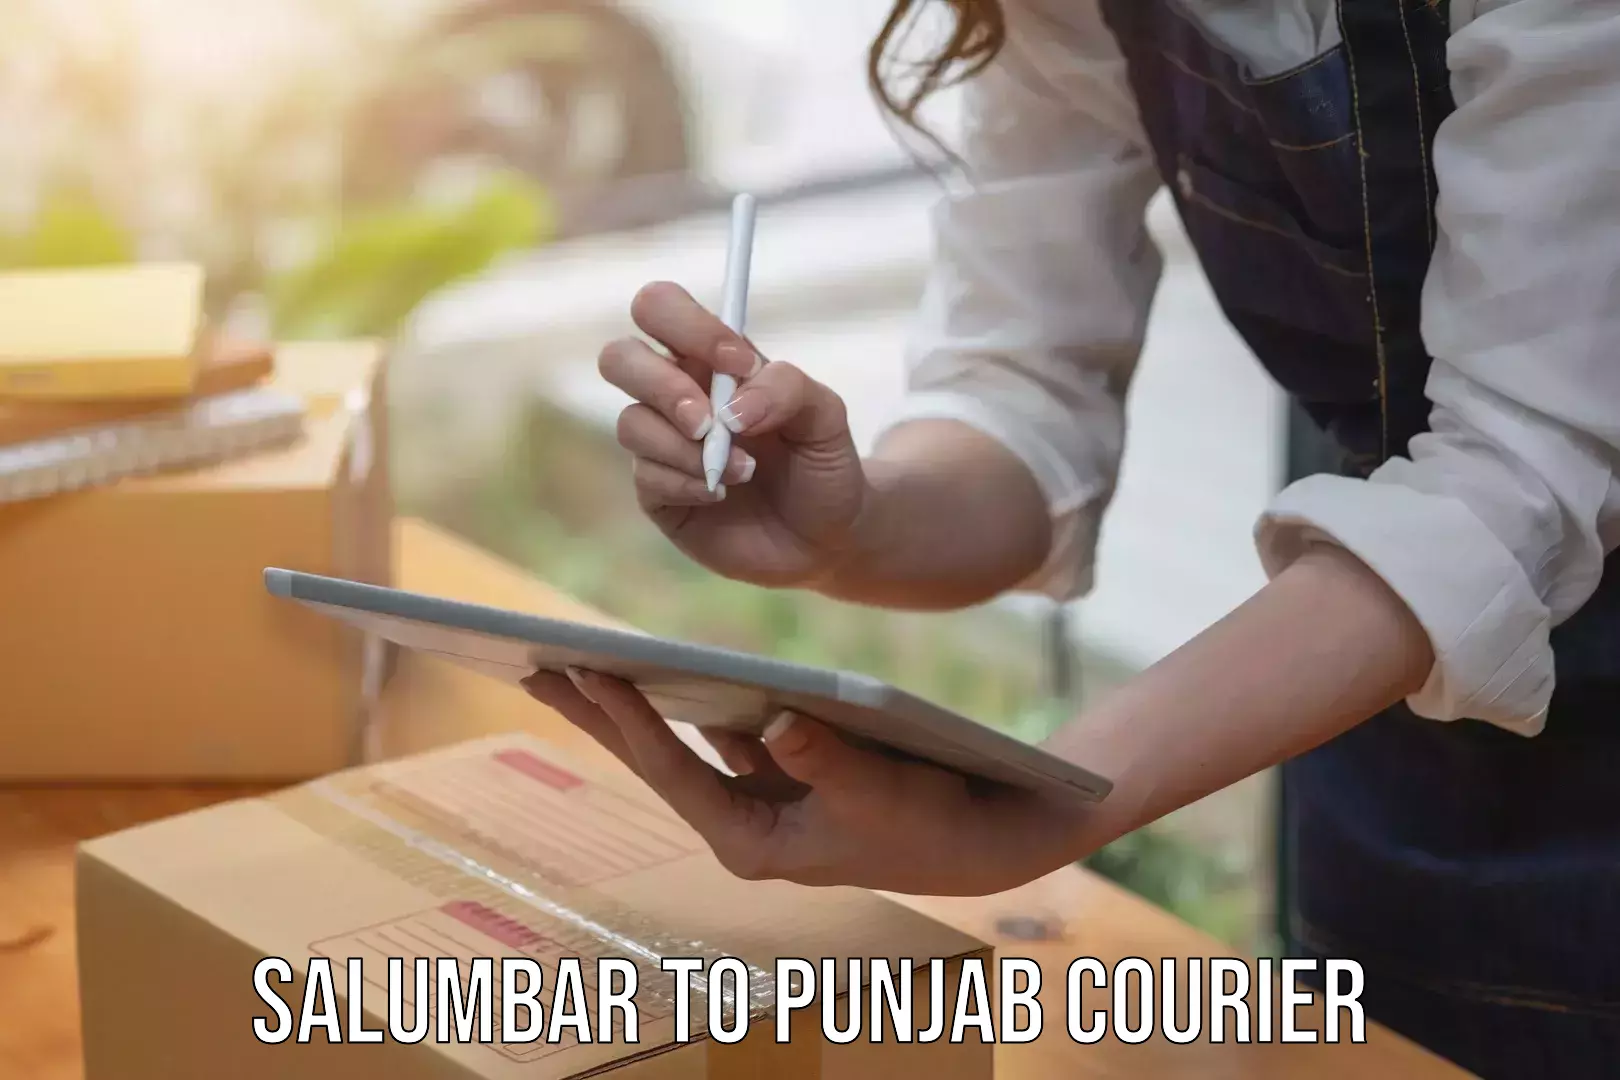 Enhanced tracking features Salumbar to Punjab